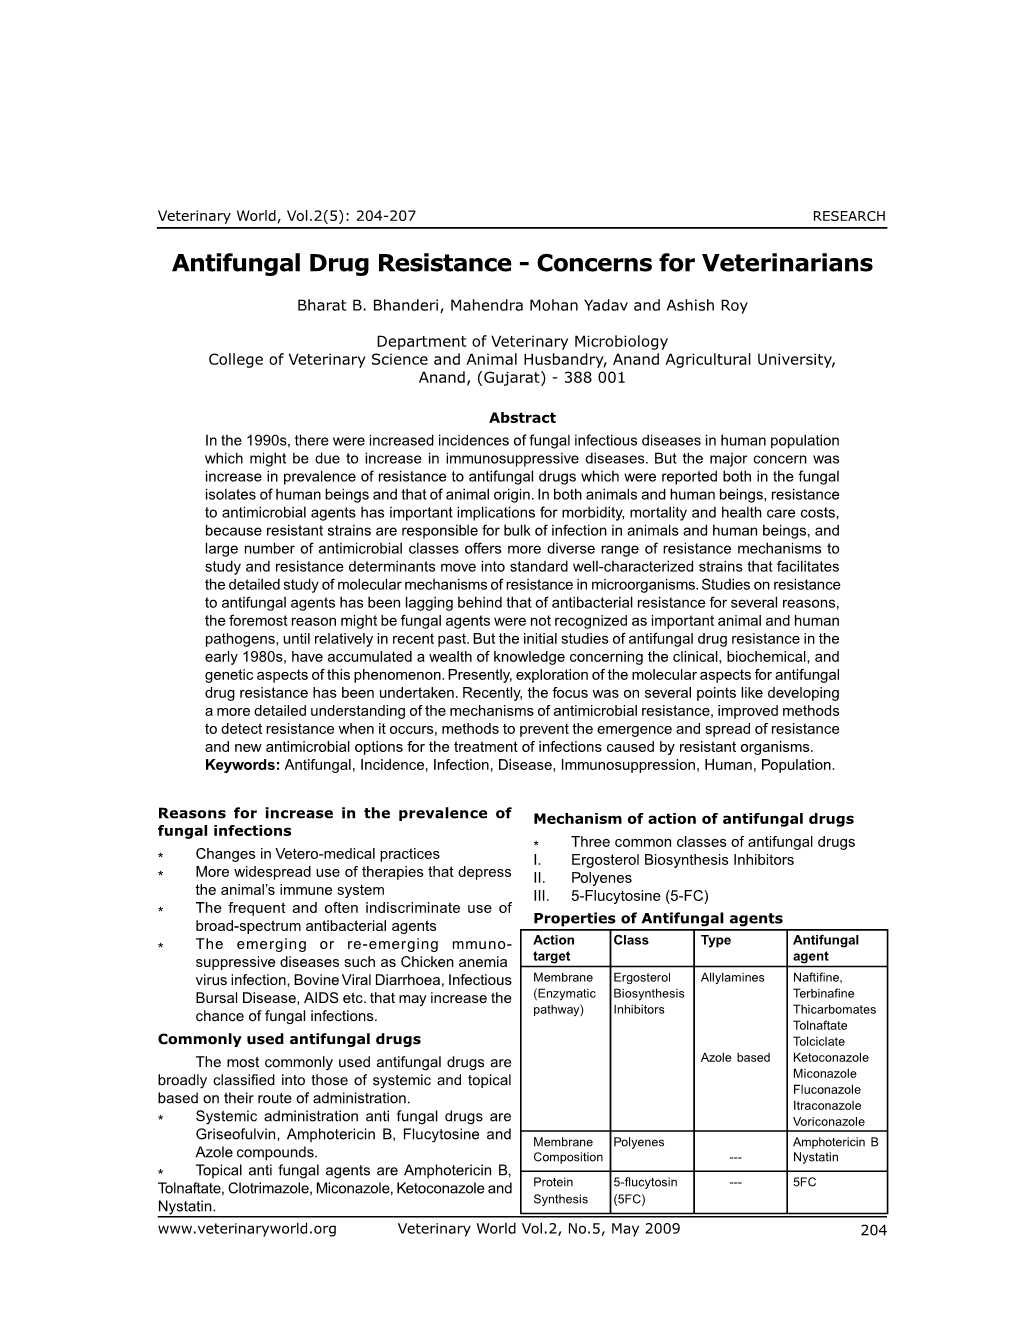 Antifungal Drug Resistance - Concerns for Veterinarians